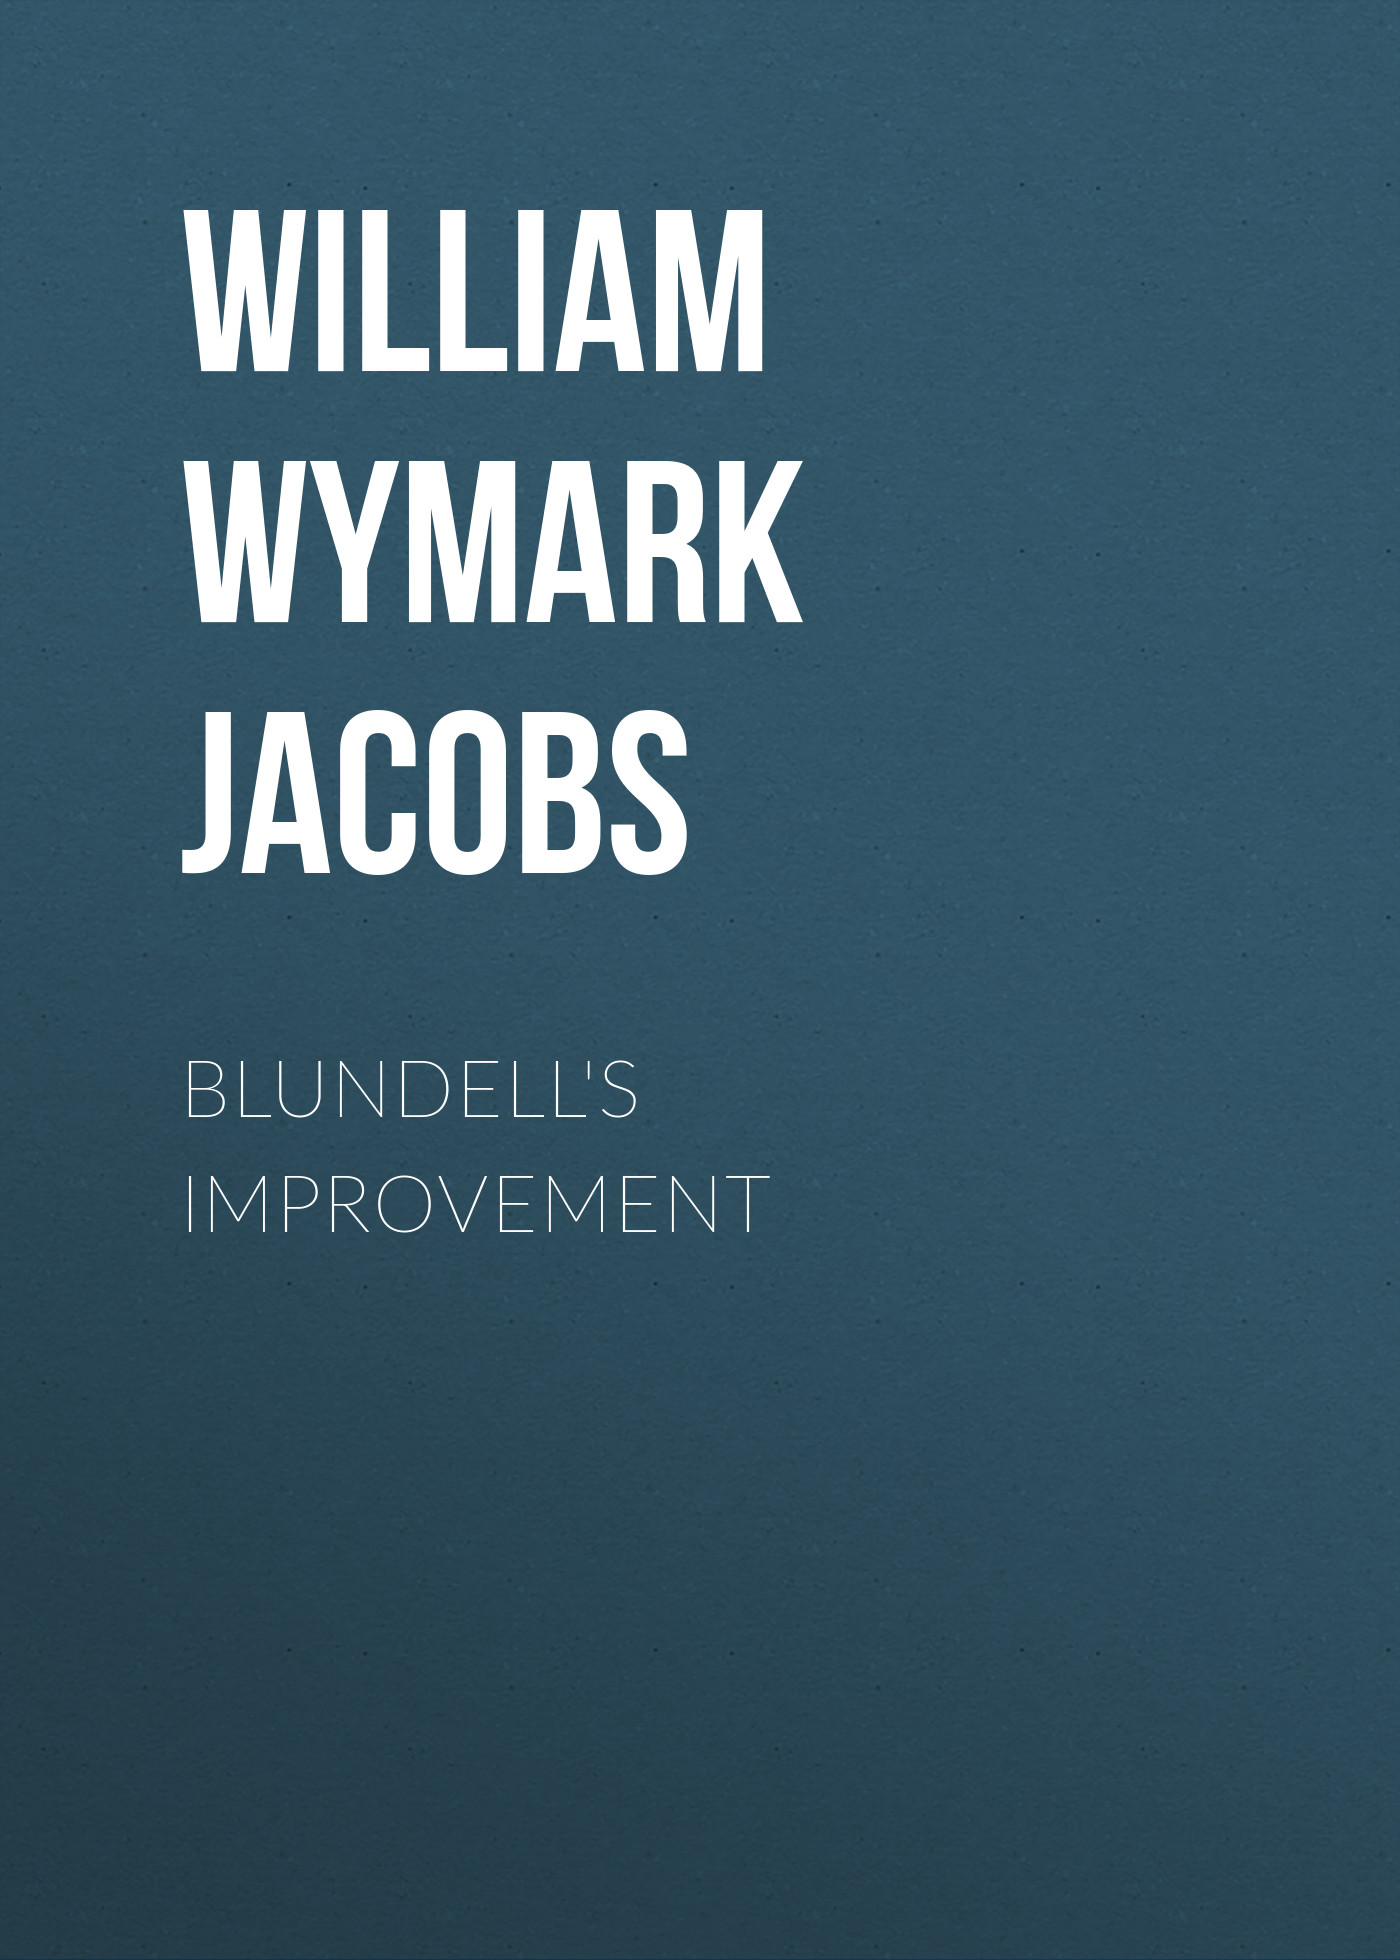 Книга Blundell's Improvement из серии , созданная William Wymark Jacobs, может относится к жанру Зарубежный юмор, Зарубежная старинная литература, Зарубежная классика. Стоимость электронной книги Blundell's Improvement с идентификатором 34844046 составляет 0 руб.